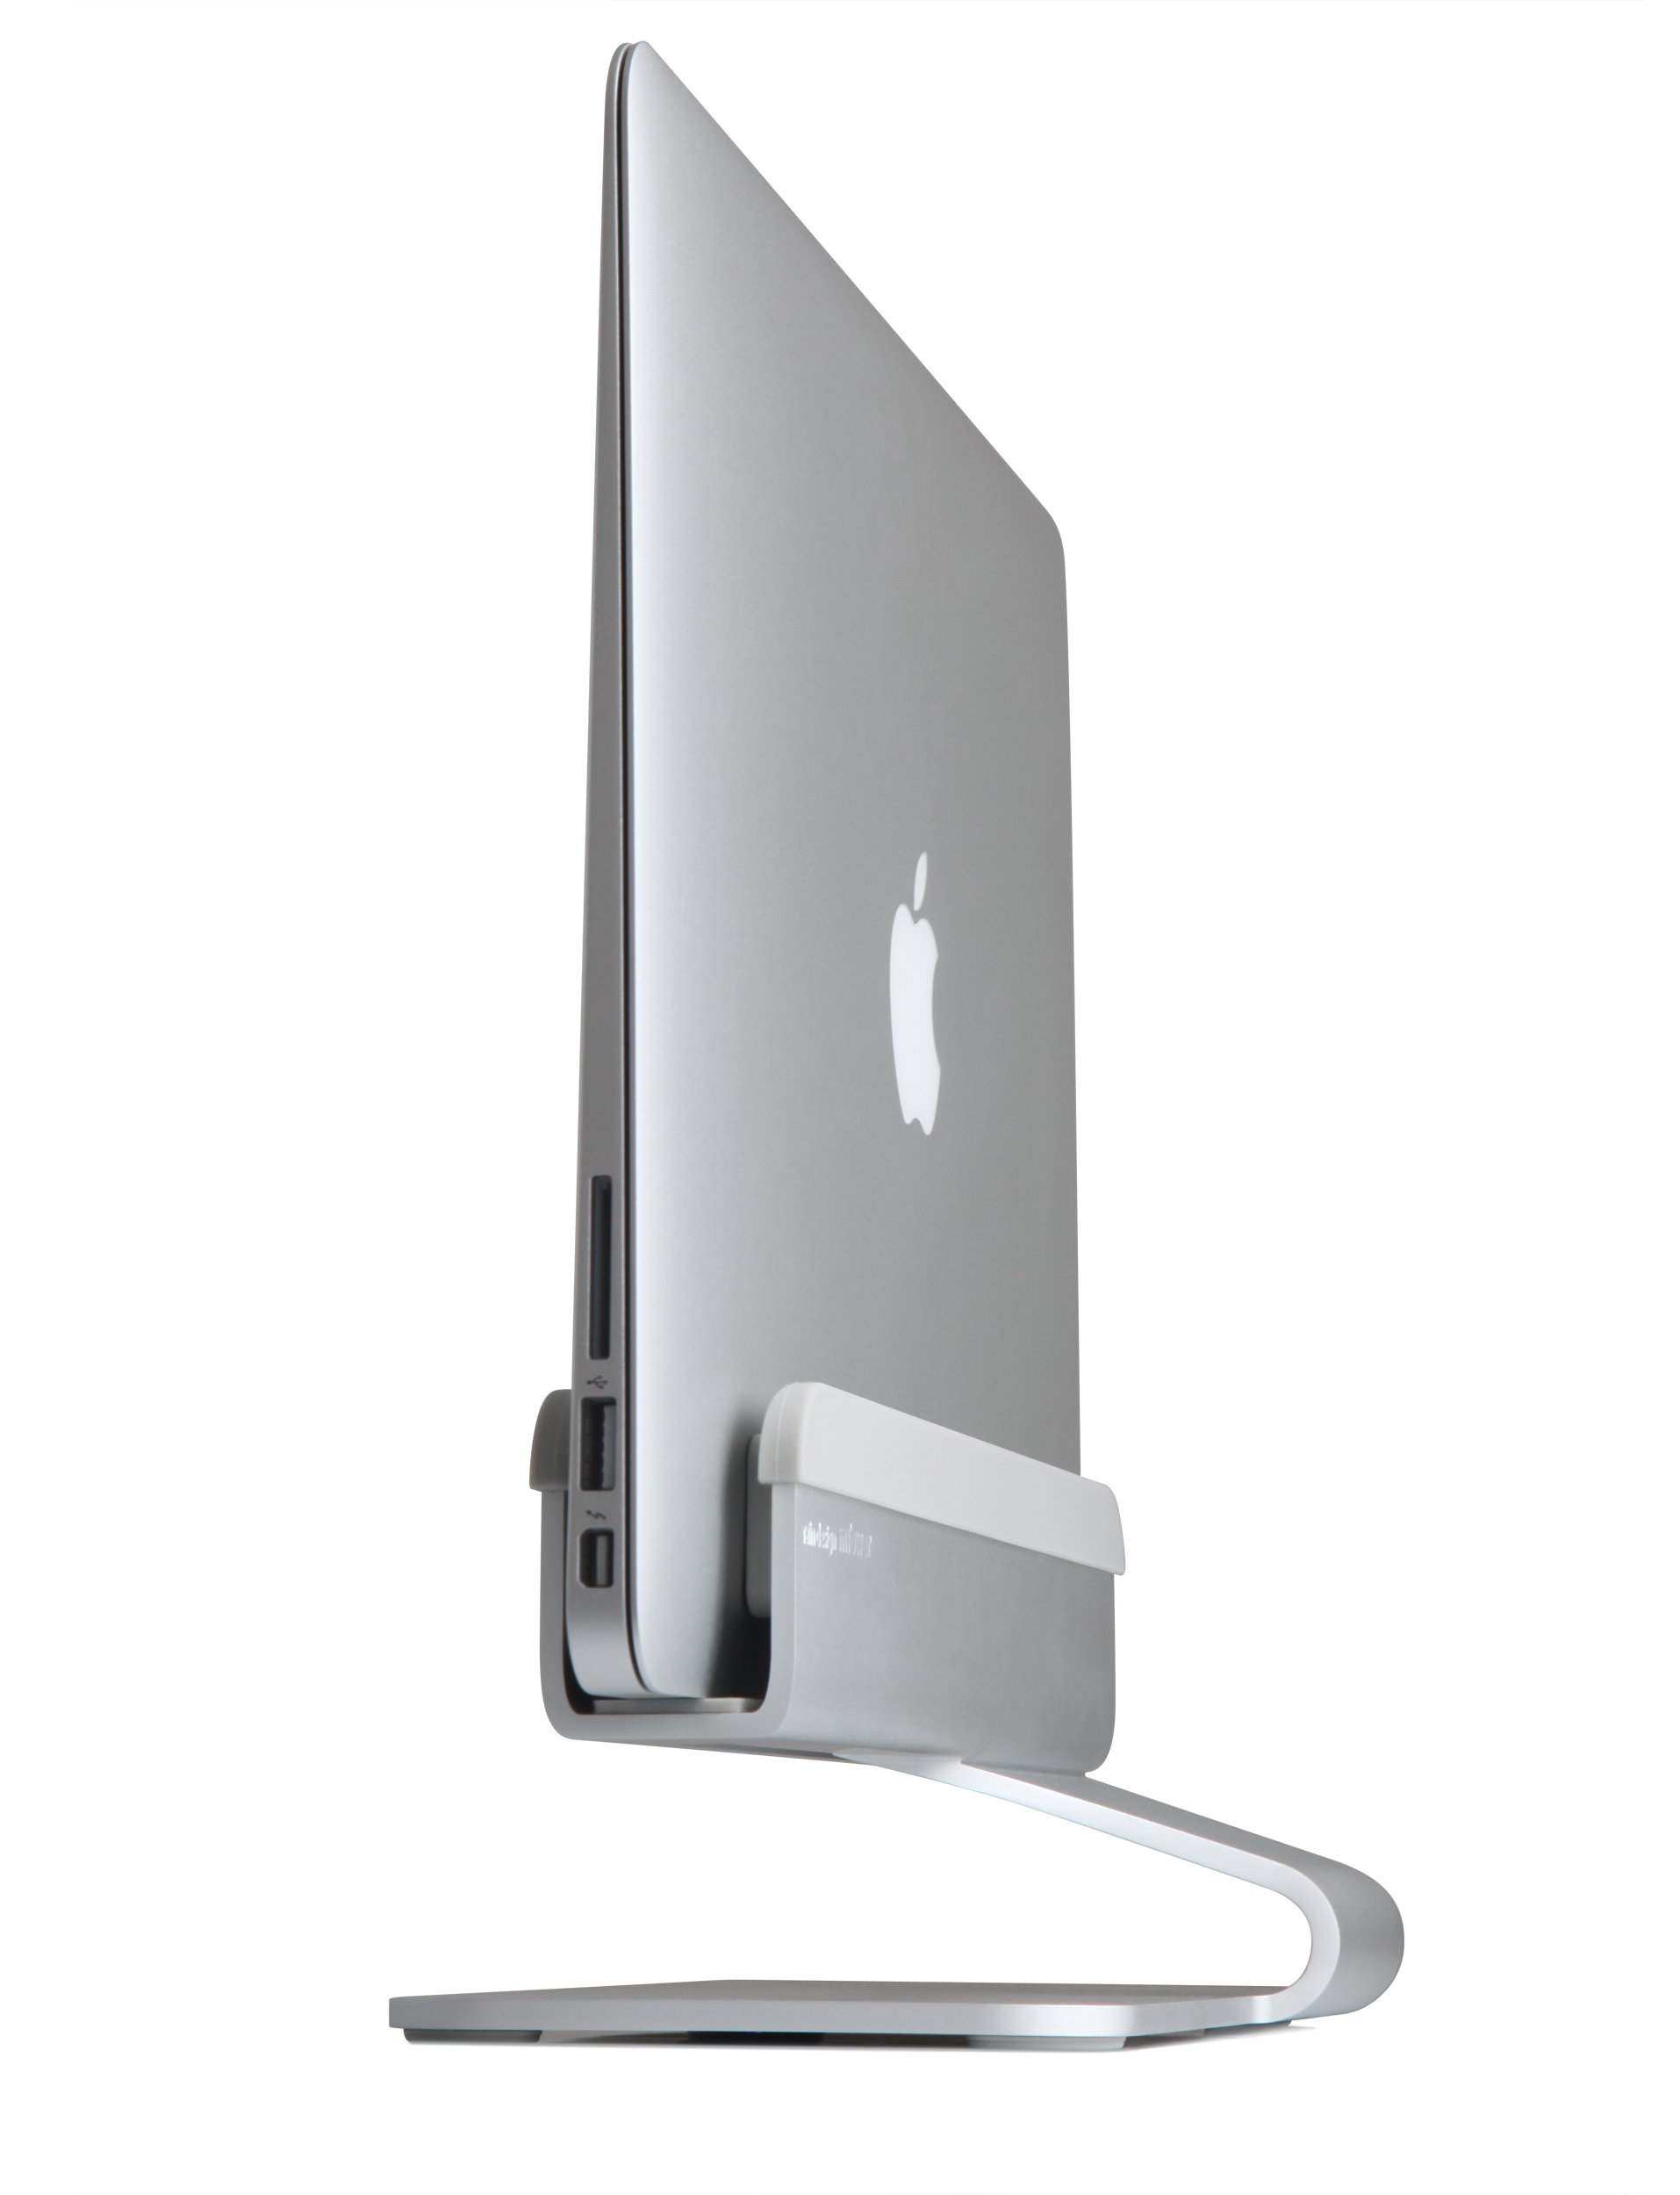 RAIN DESIGN mTower Staender MacBook Pro u Air Standfuss MacBook Retina solide Alu Design massiv Plat